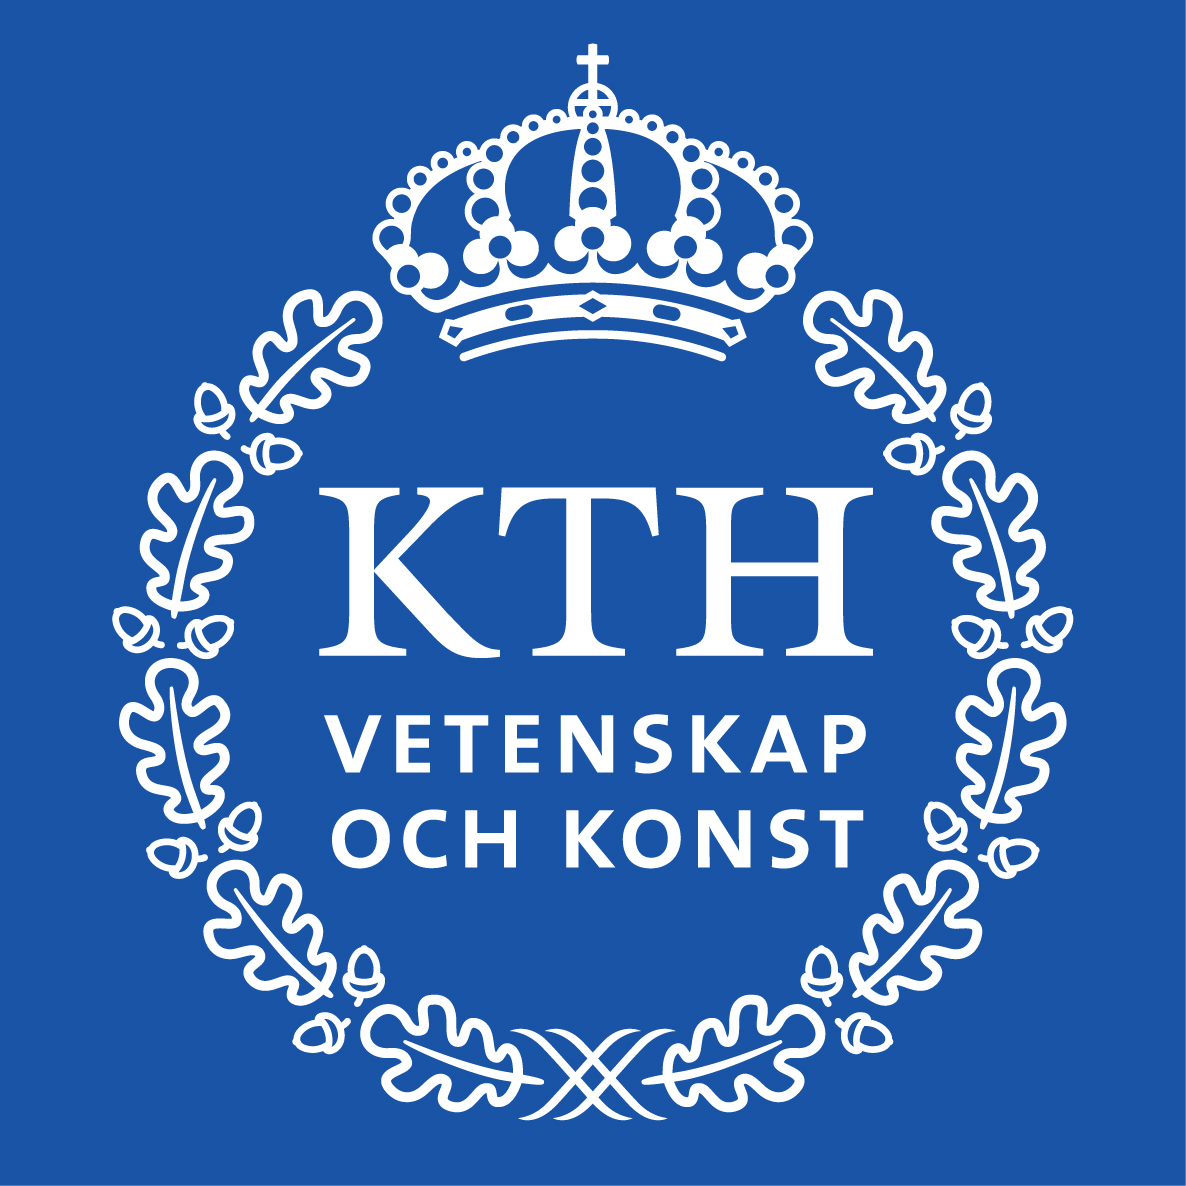 Ismét szakmai gyakorlati lehetőséget hirdet a Royal Institute of Technology (KTH) Stockholm Gyártástechnológia Tanszéke